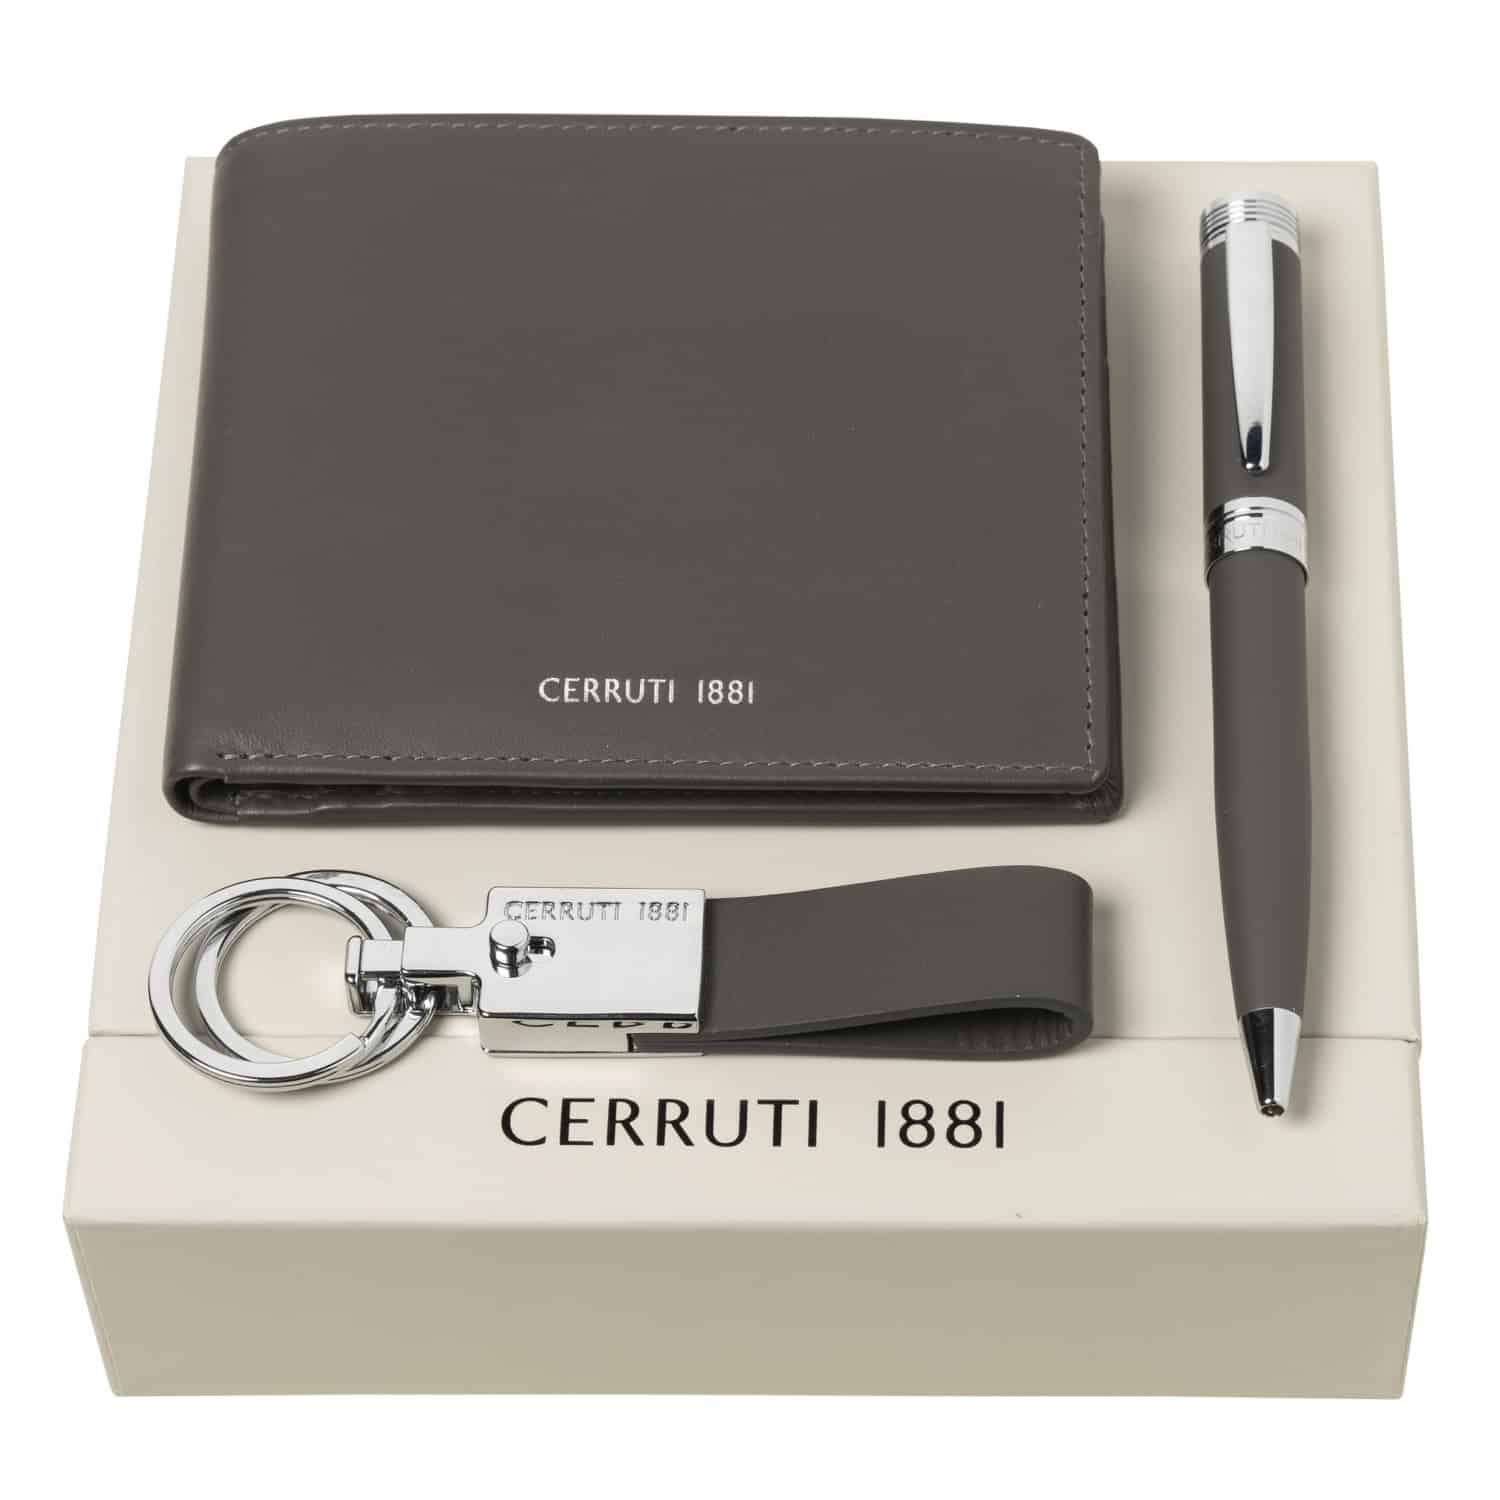 Pen key. Набор Cerruti ручка кошелек. Подарочный набор ручка брелок и портмоне. Комплект ручка с бумажником. Комплект портмоне, флешка GB, ручка, брелок.